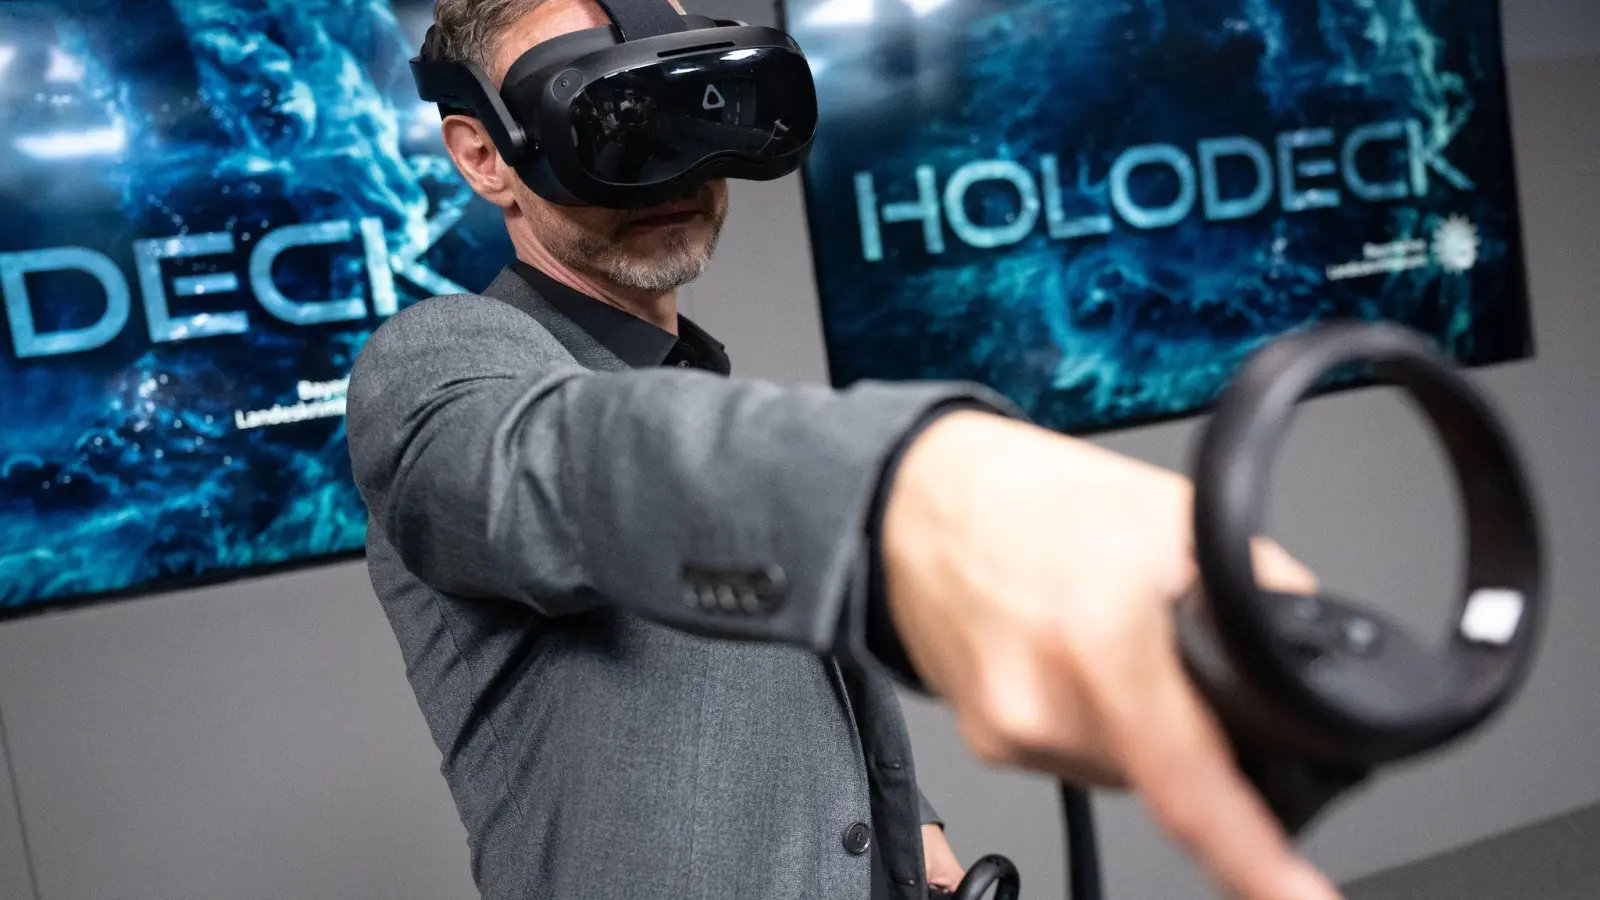 Ralf Breker, Leiter der forensischen Medientechnik beim LKA, steht mit einer VR-Brille während einer Pressekonferenz im Tatort-Virtual-Reality-Raum (Holodeck) des Bayerischen Landeskriminalamts (LKA). (Foto: Sven Hoppe/dpa)